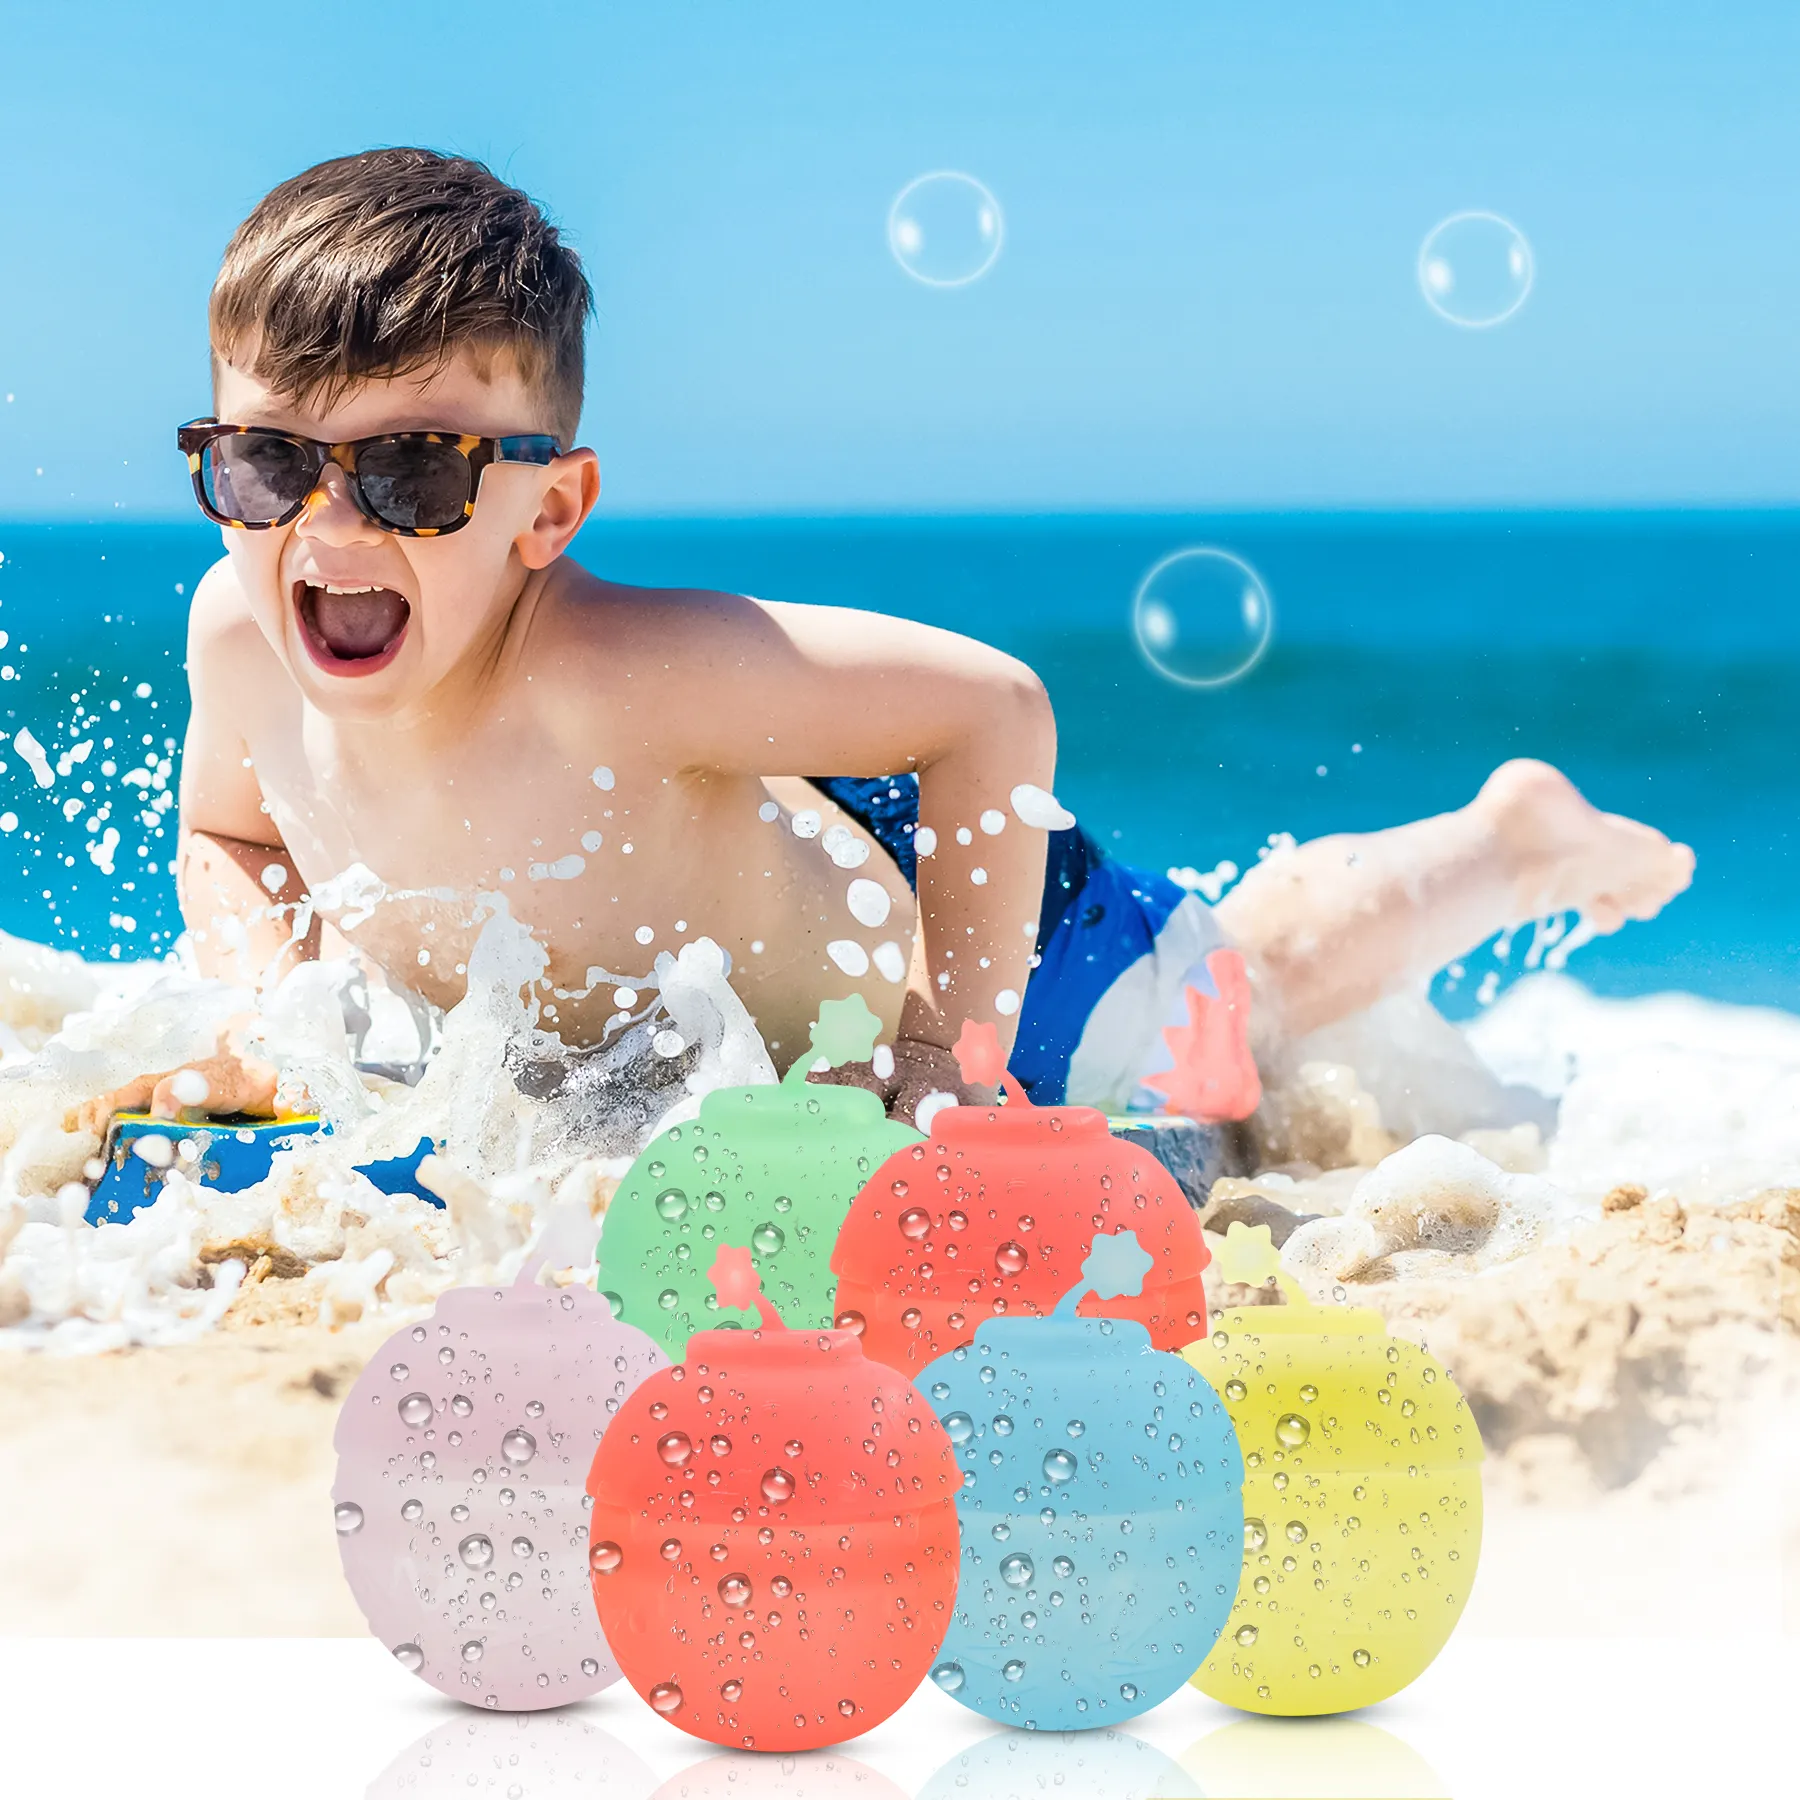 بالونات مياه متعددة الألوان للأطفال كثيرة الطلب مصنوعة من السيليكون وبدون مغناطيس تصلح مع ألعاب الصيف